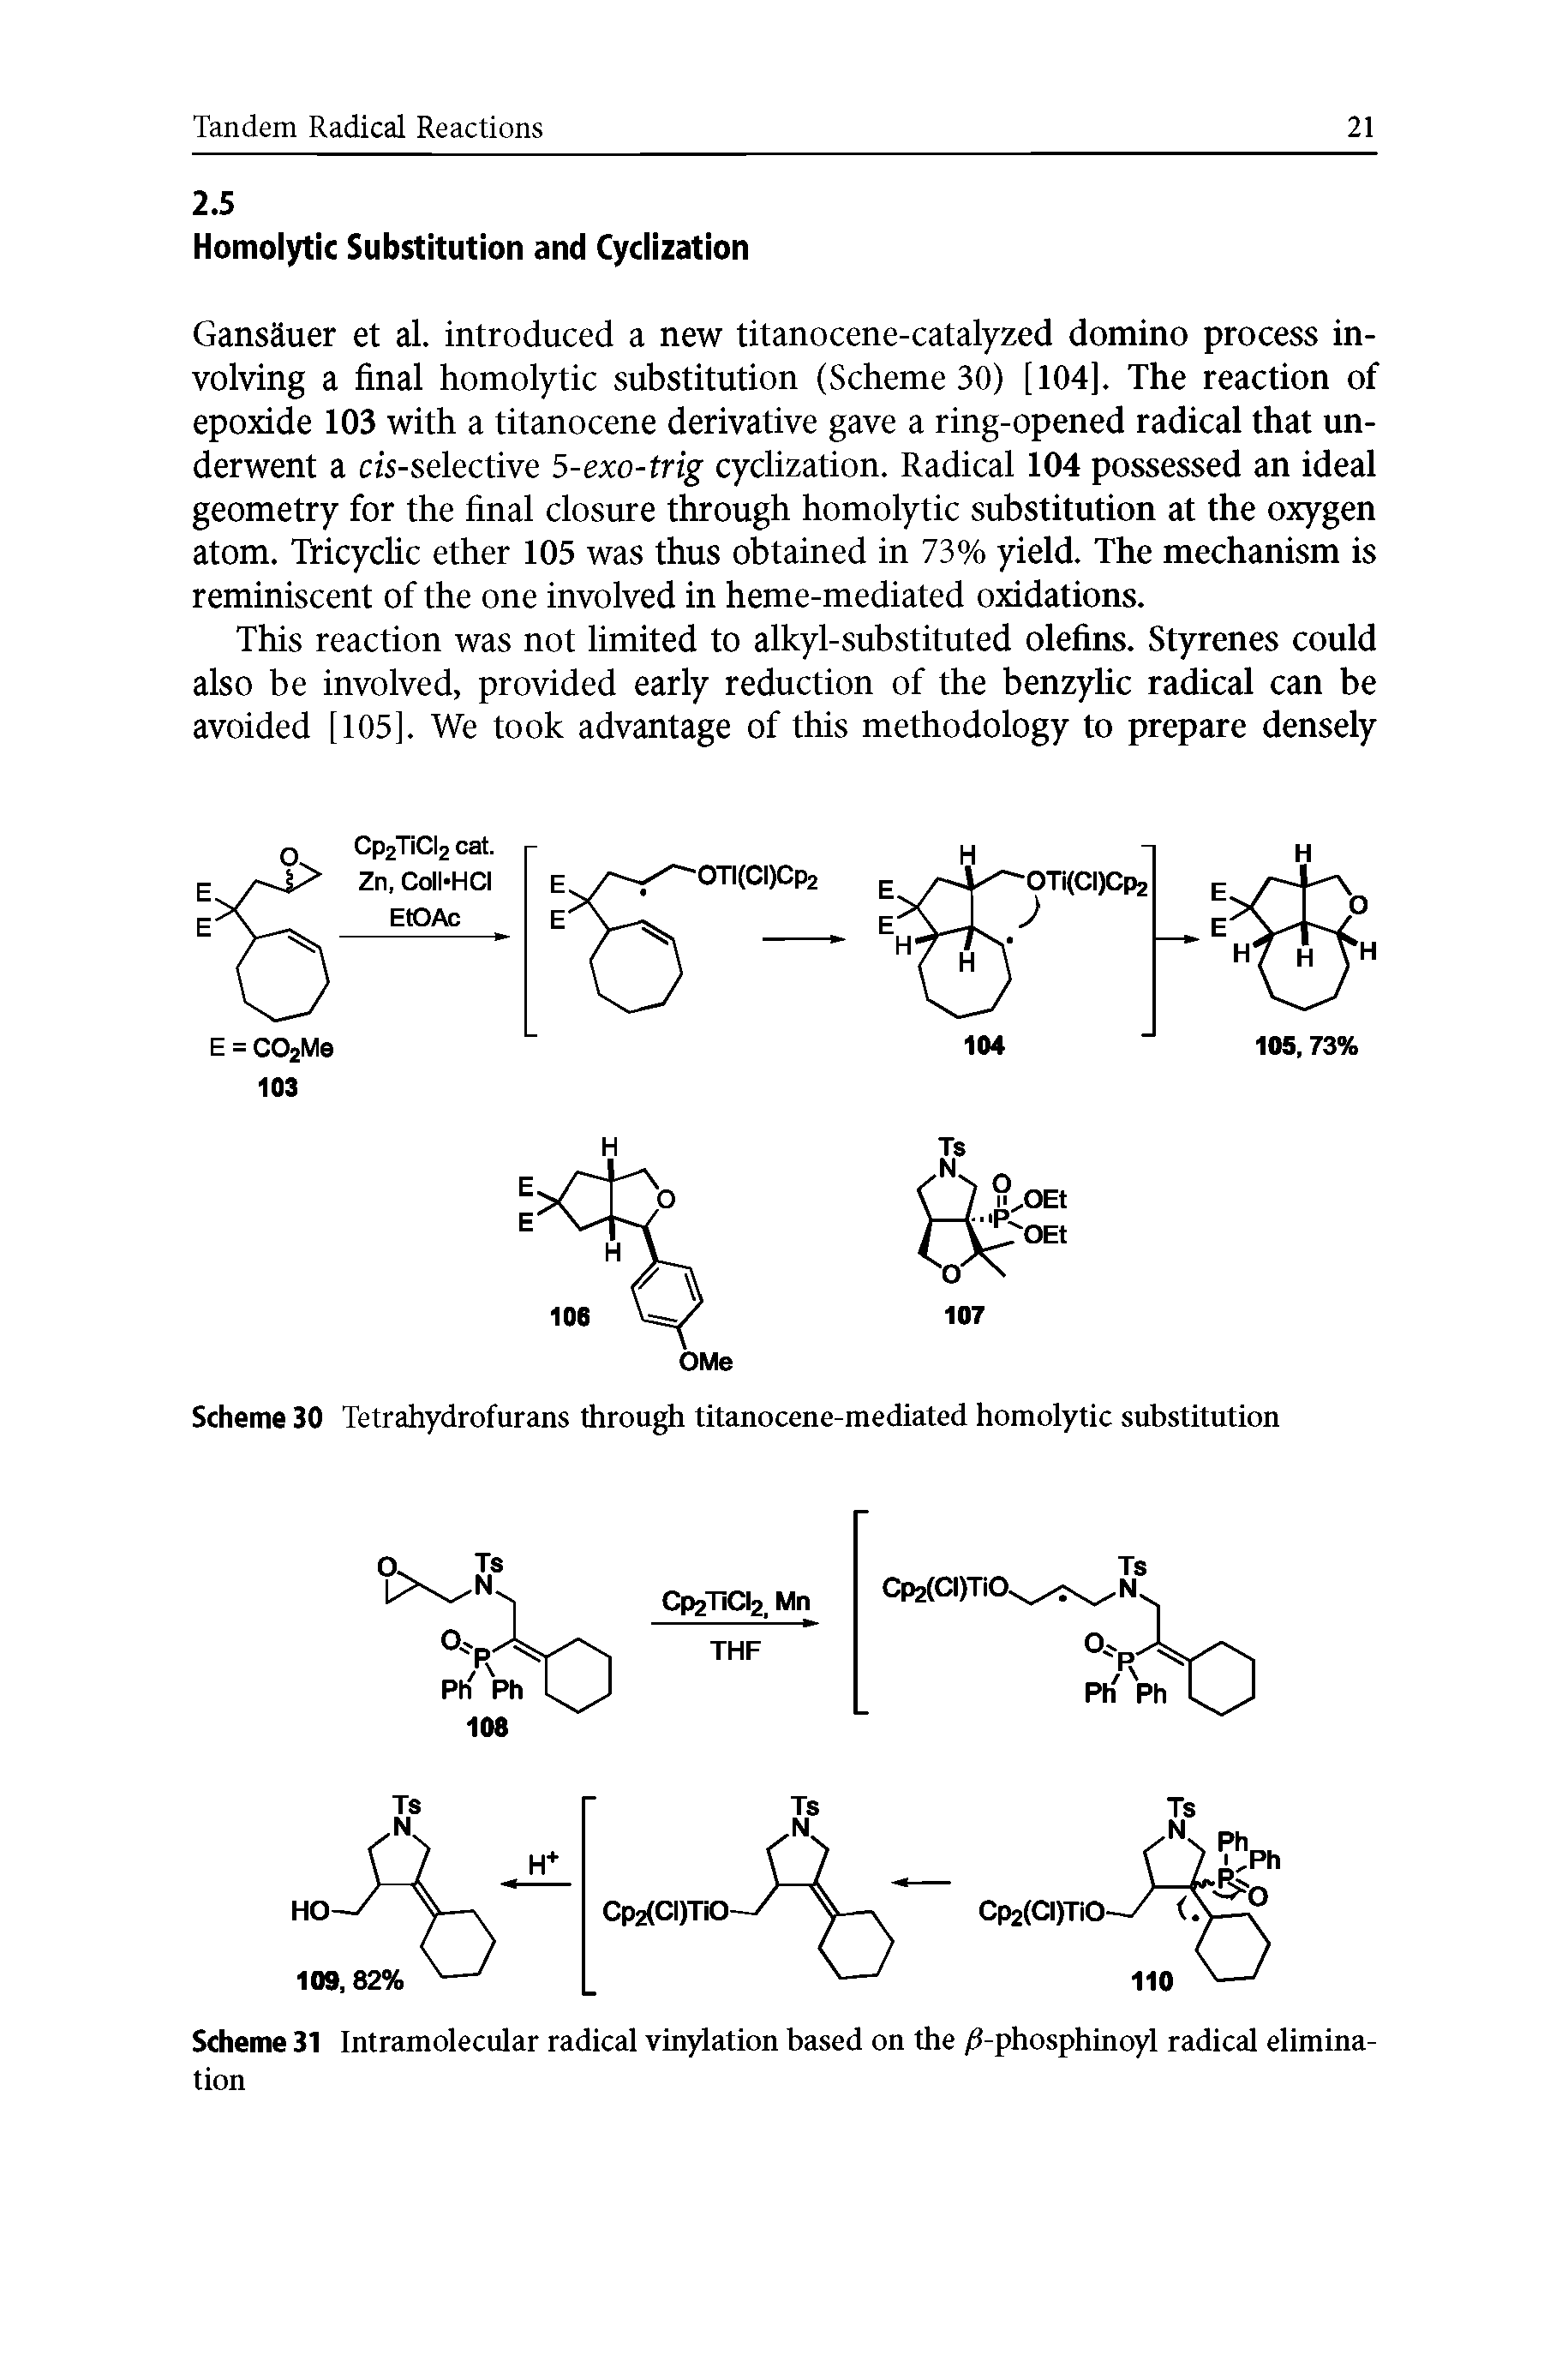 Scheme 31 Intramolecular radical vinylation based on the /3-phosphinoyl radical elimination...